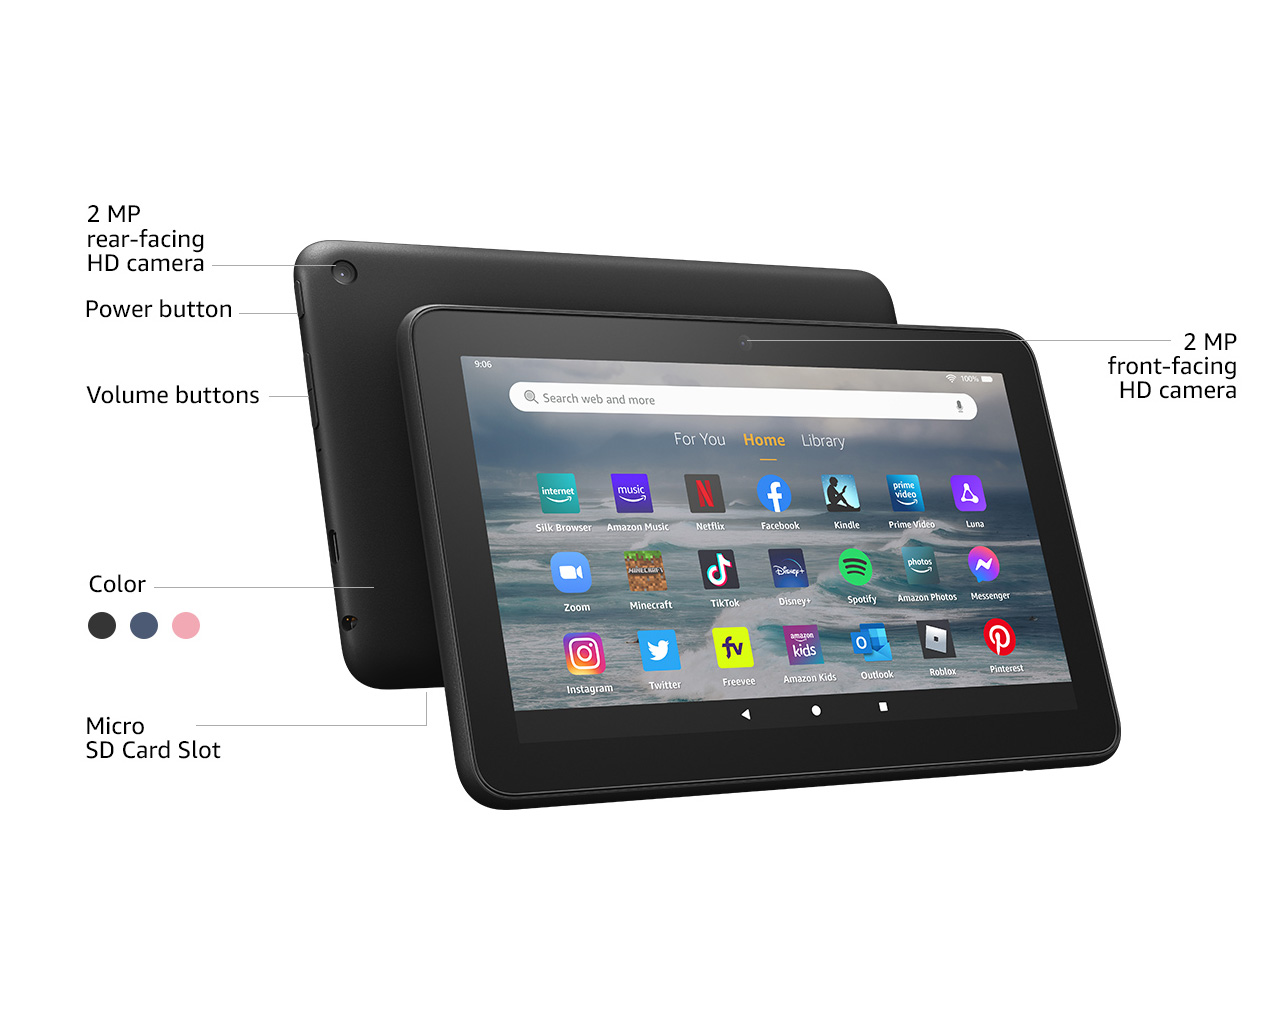 70€ sur Tablette Enfant 7 Pouces Android 6.0 Bluetooth Play Store